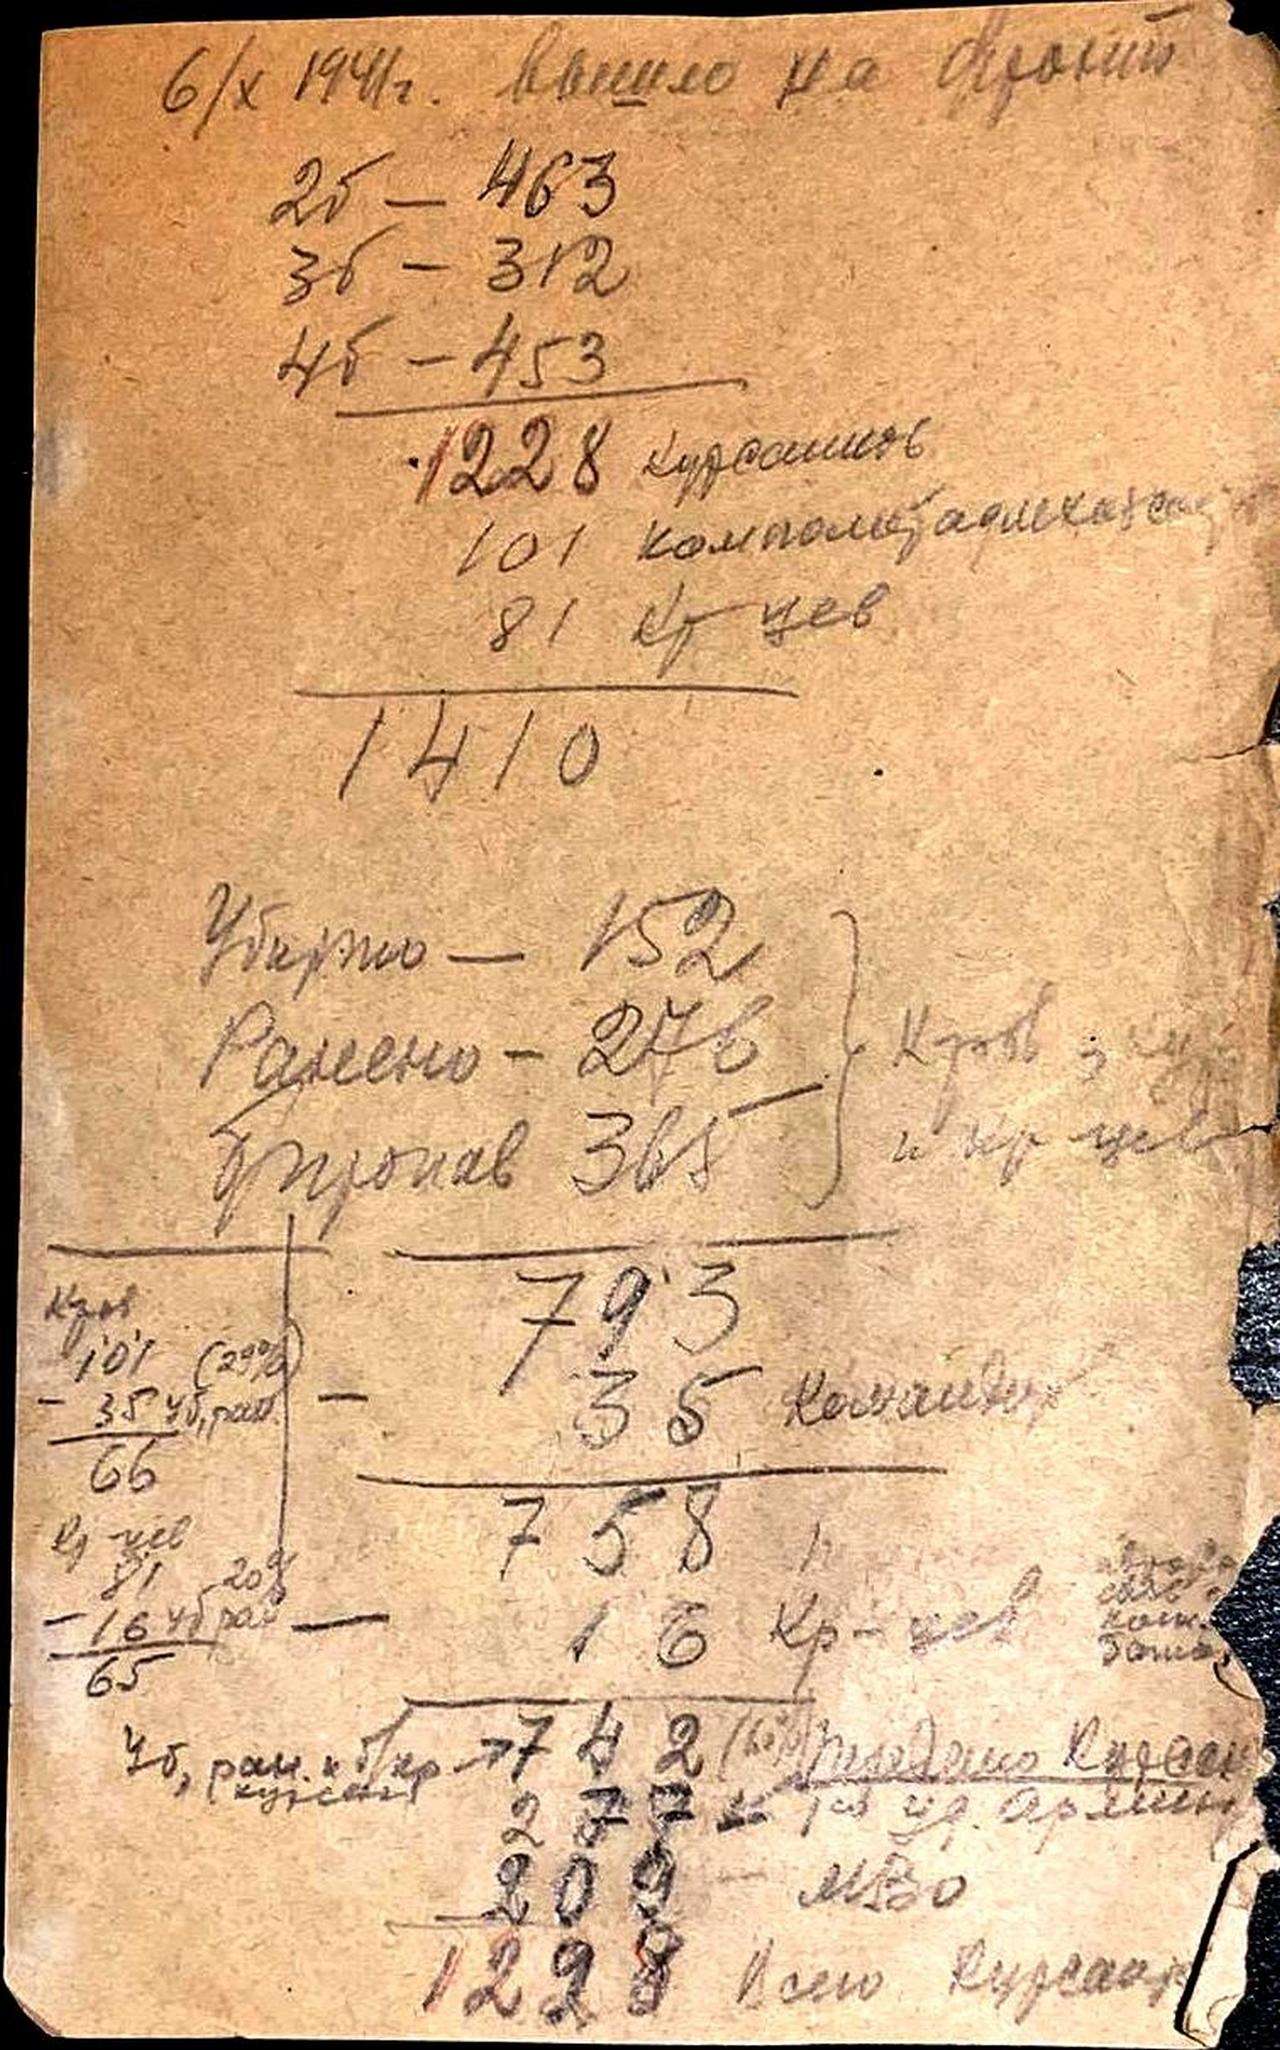 Cтраница записной книжки с данными о потерях курсантского полка МКПУ.